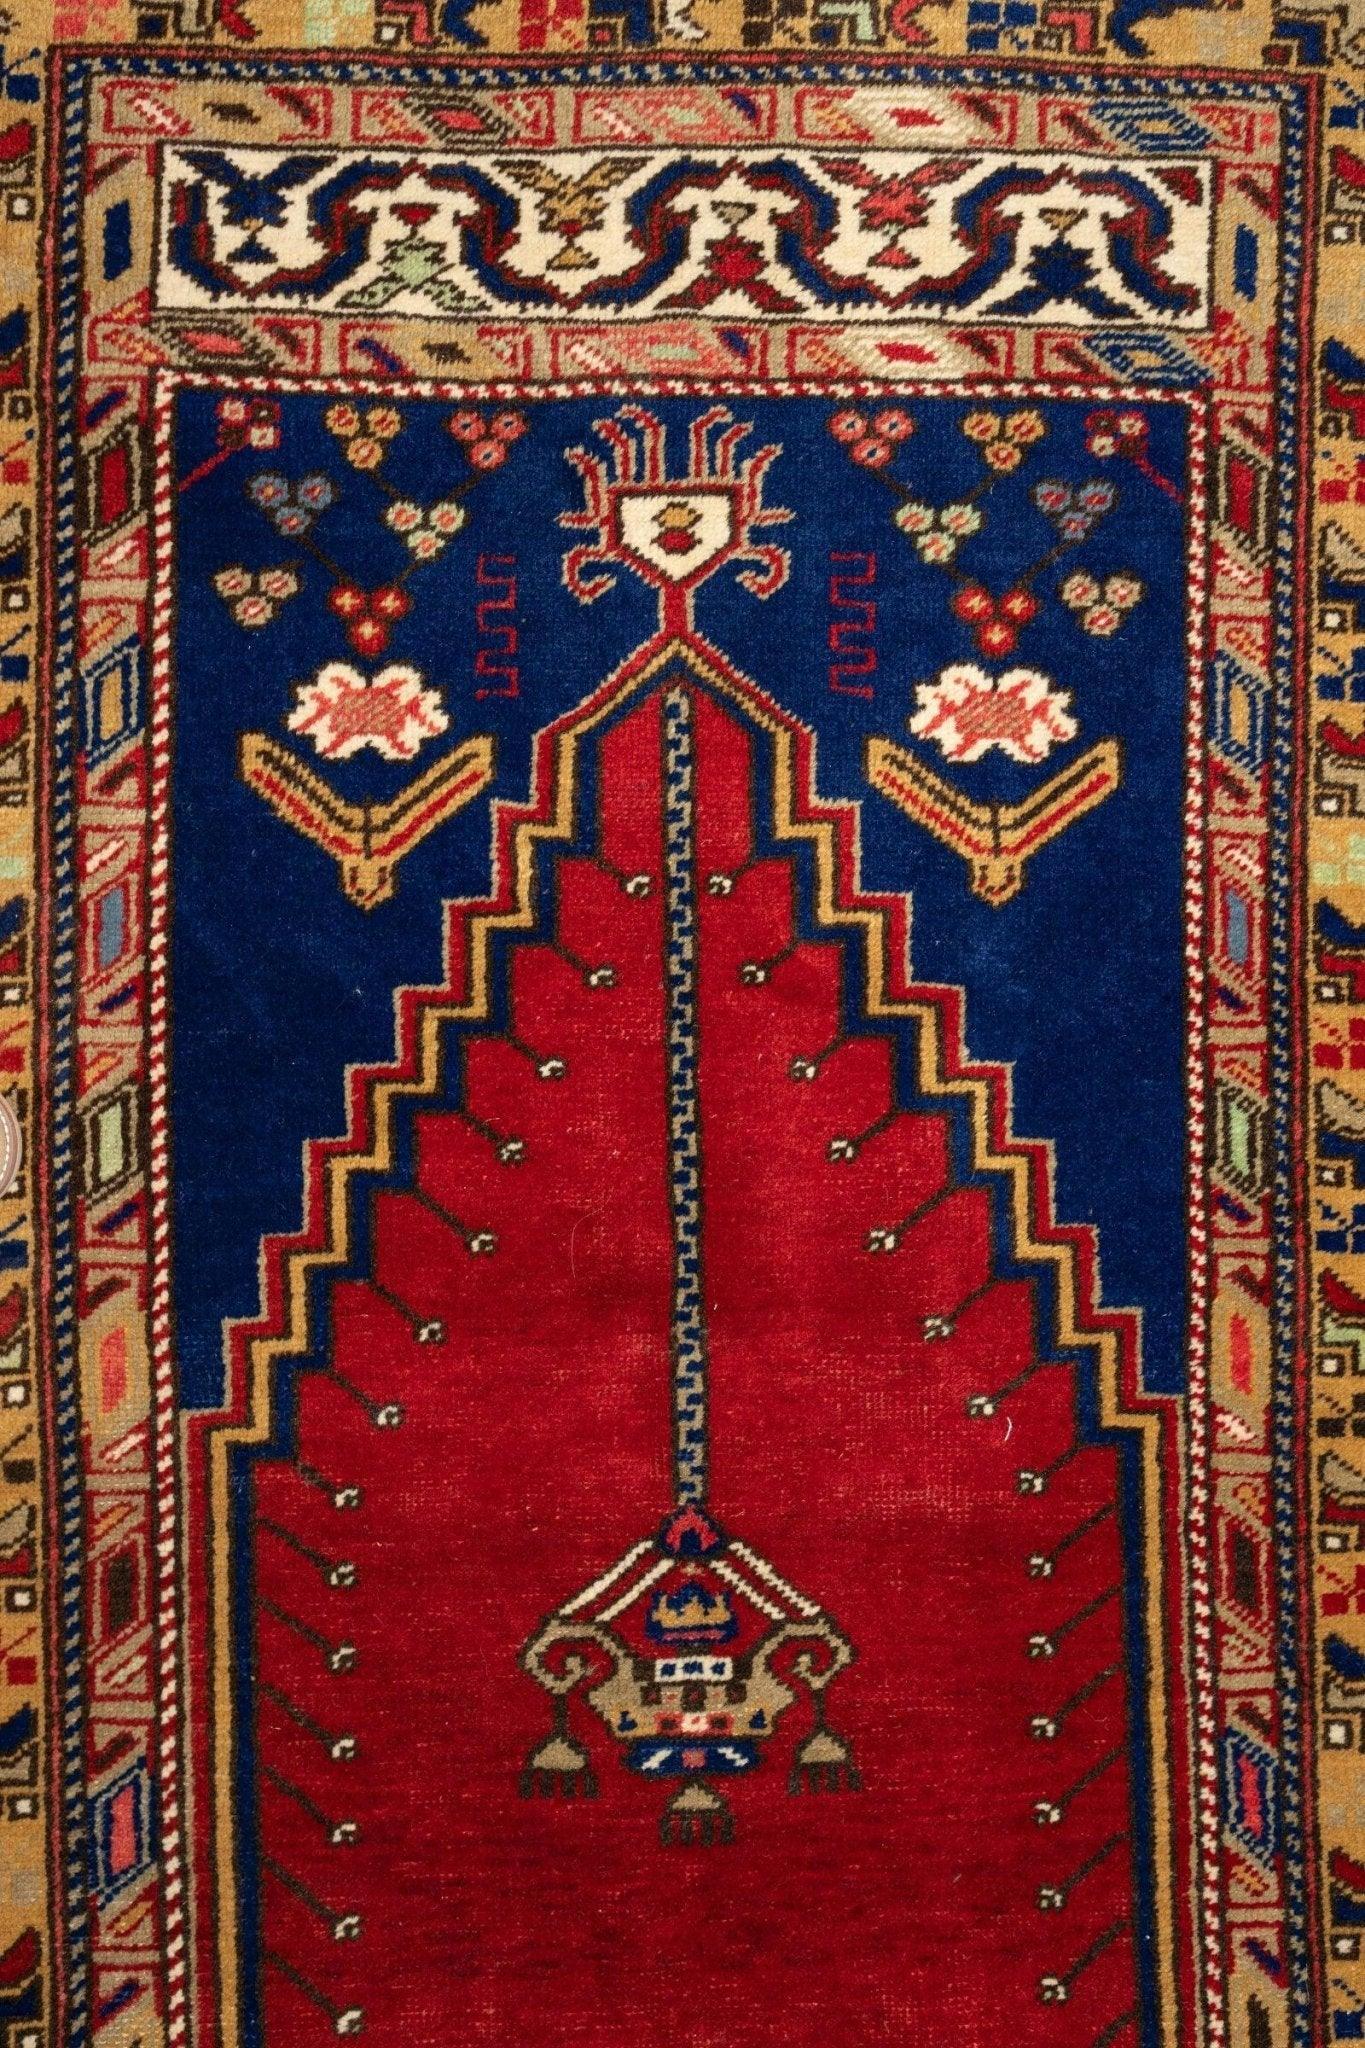 Antique Turkish Wool Prayer Rug 4x6 Ft